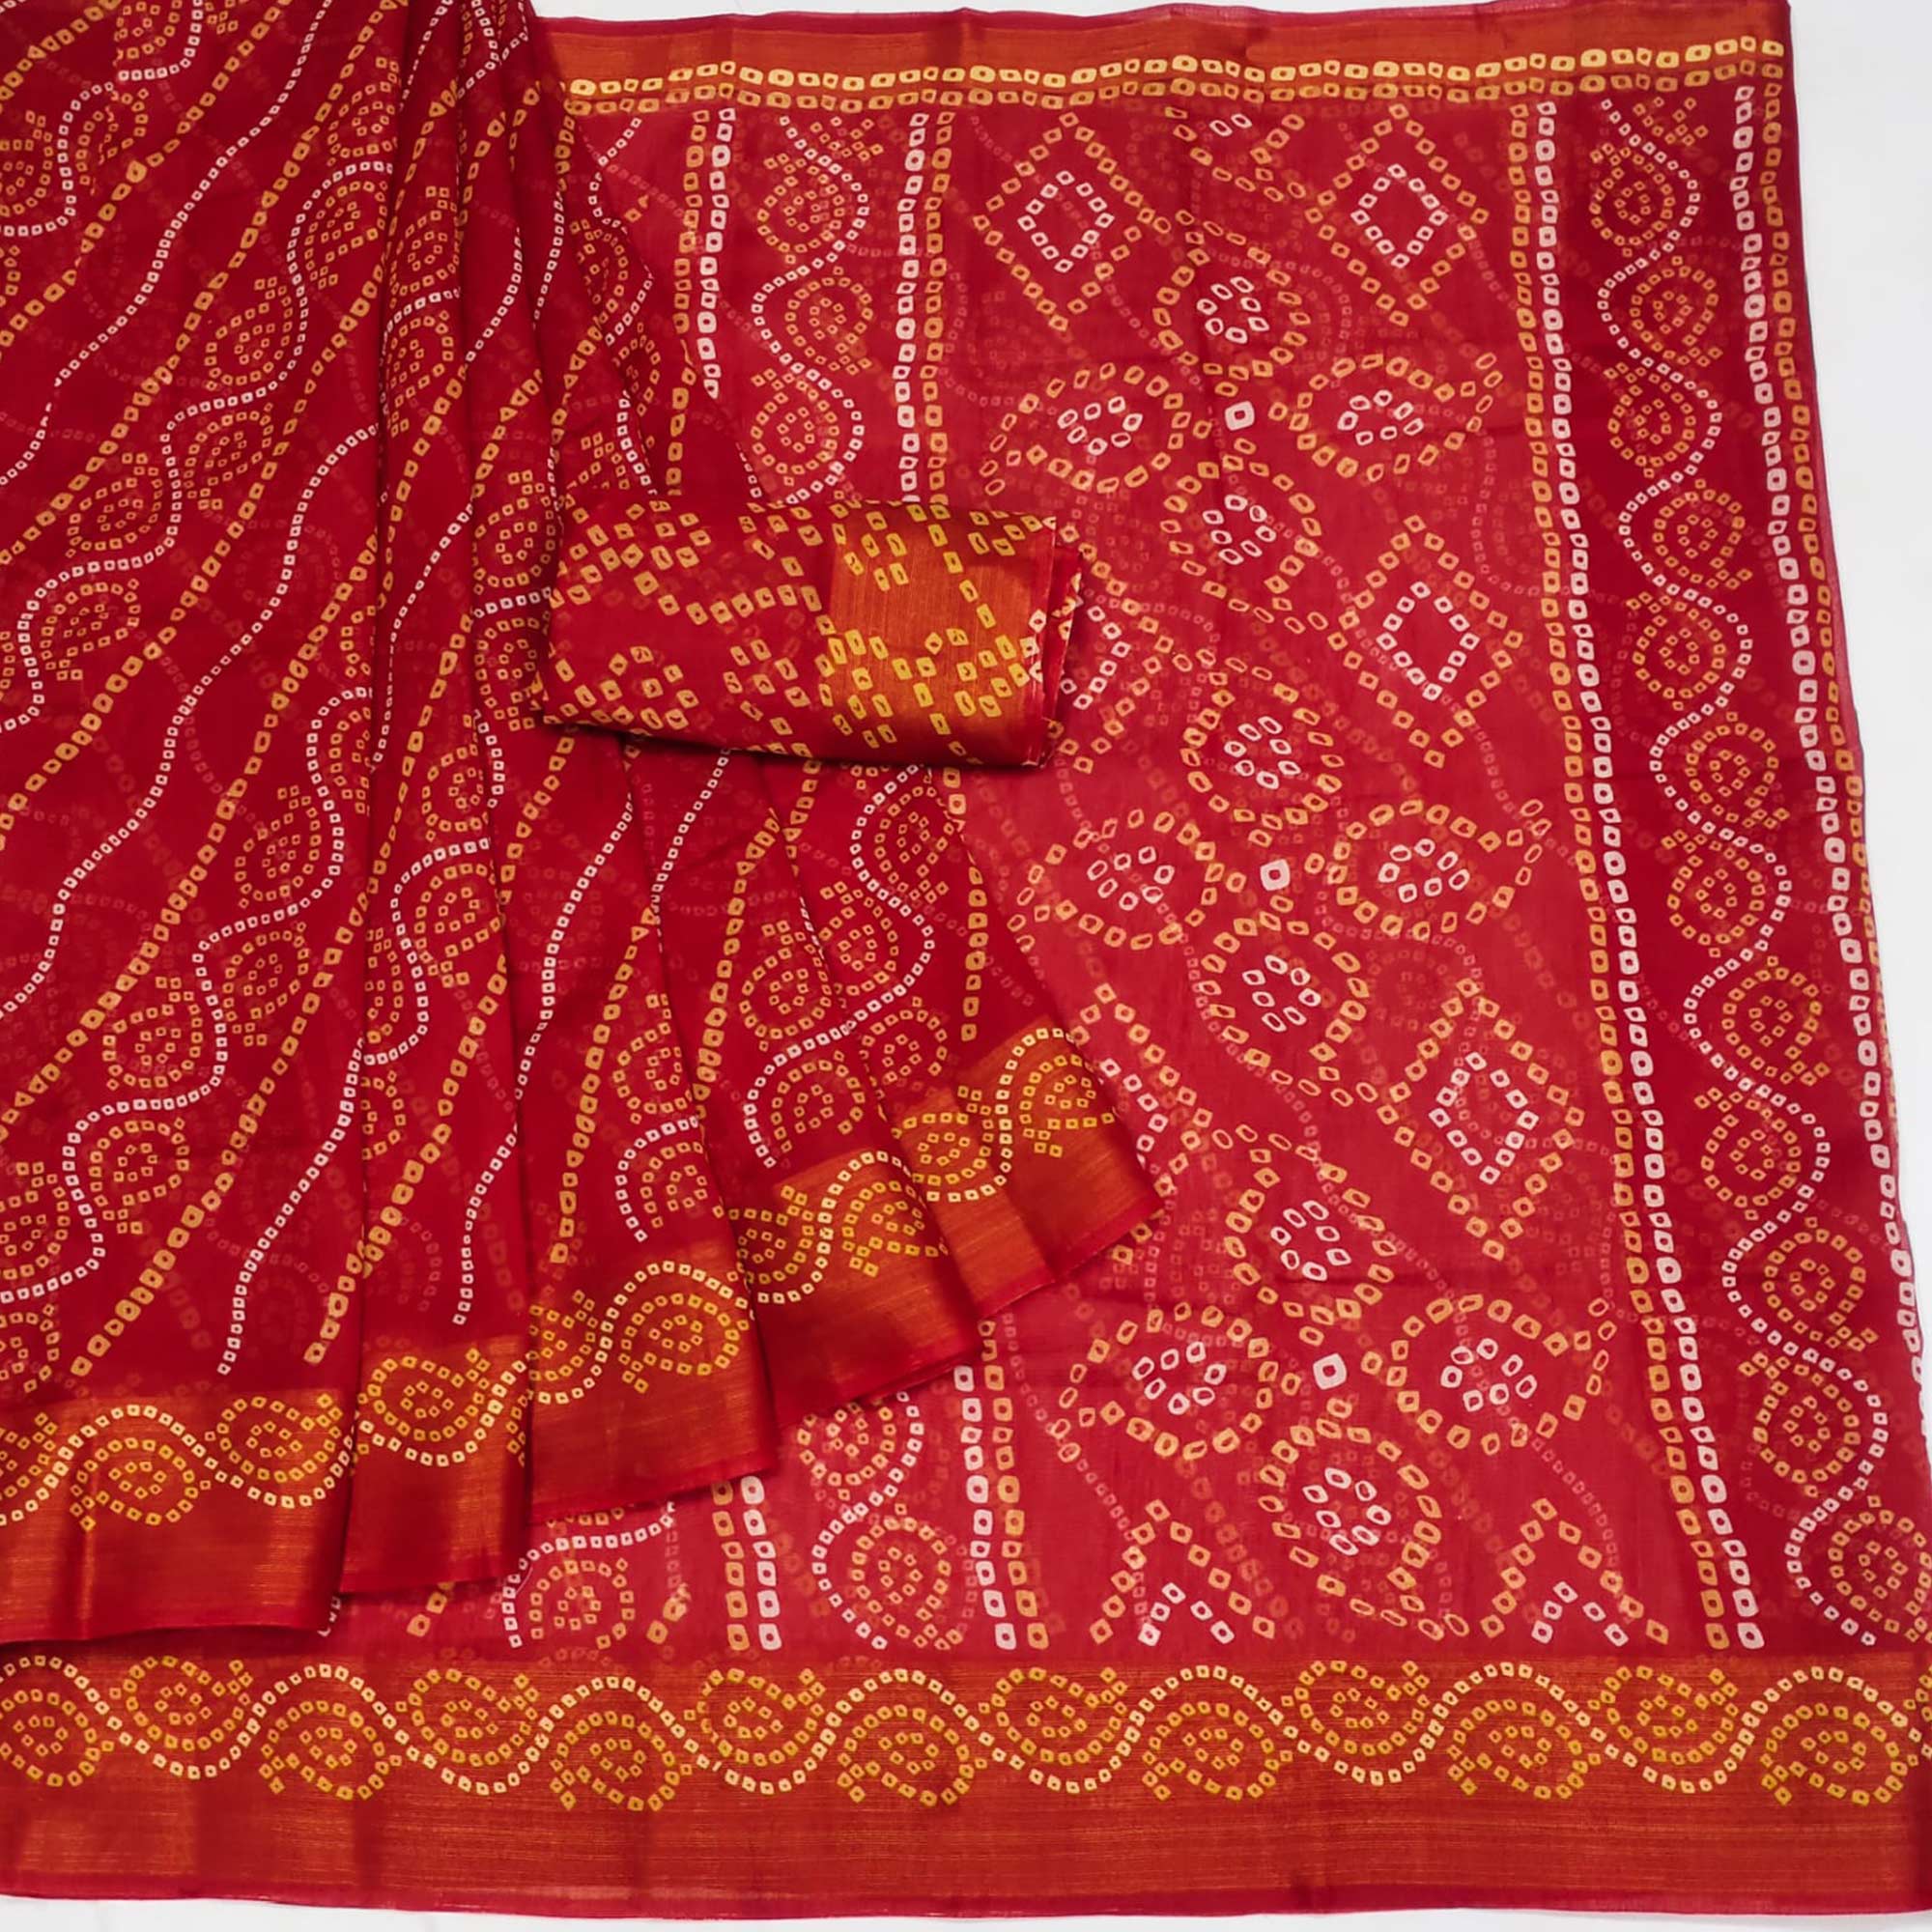 Red Bandhani Printed Cotton Blend Saree